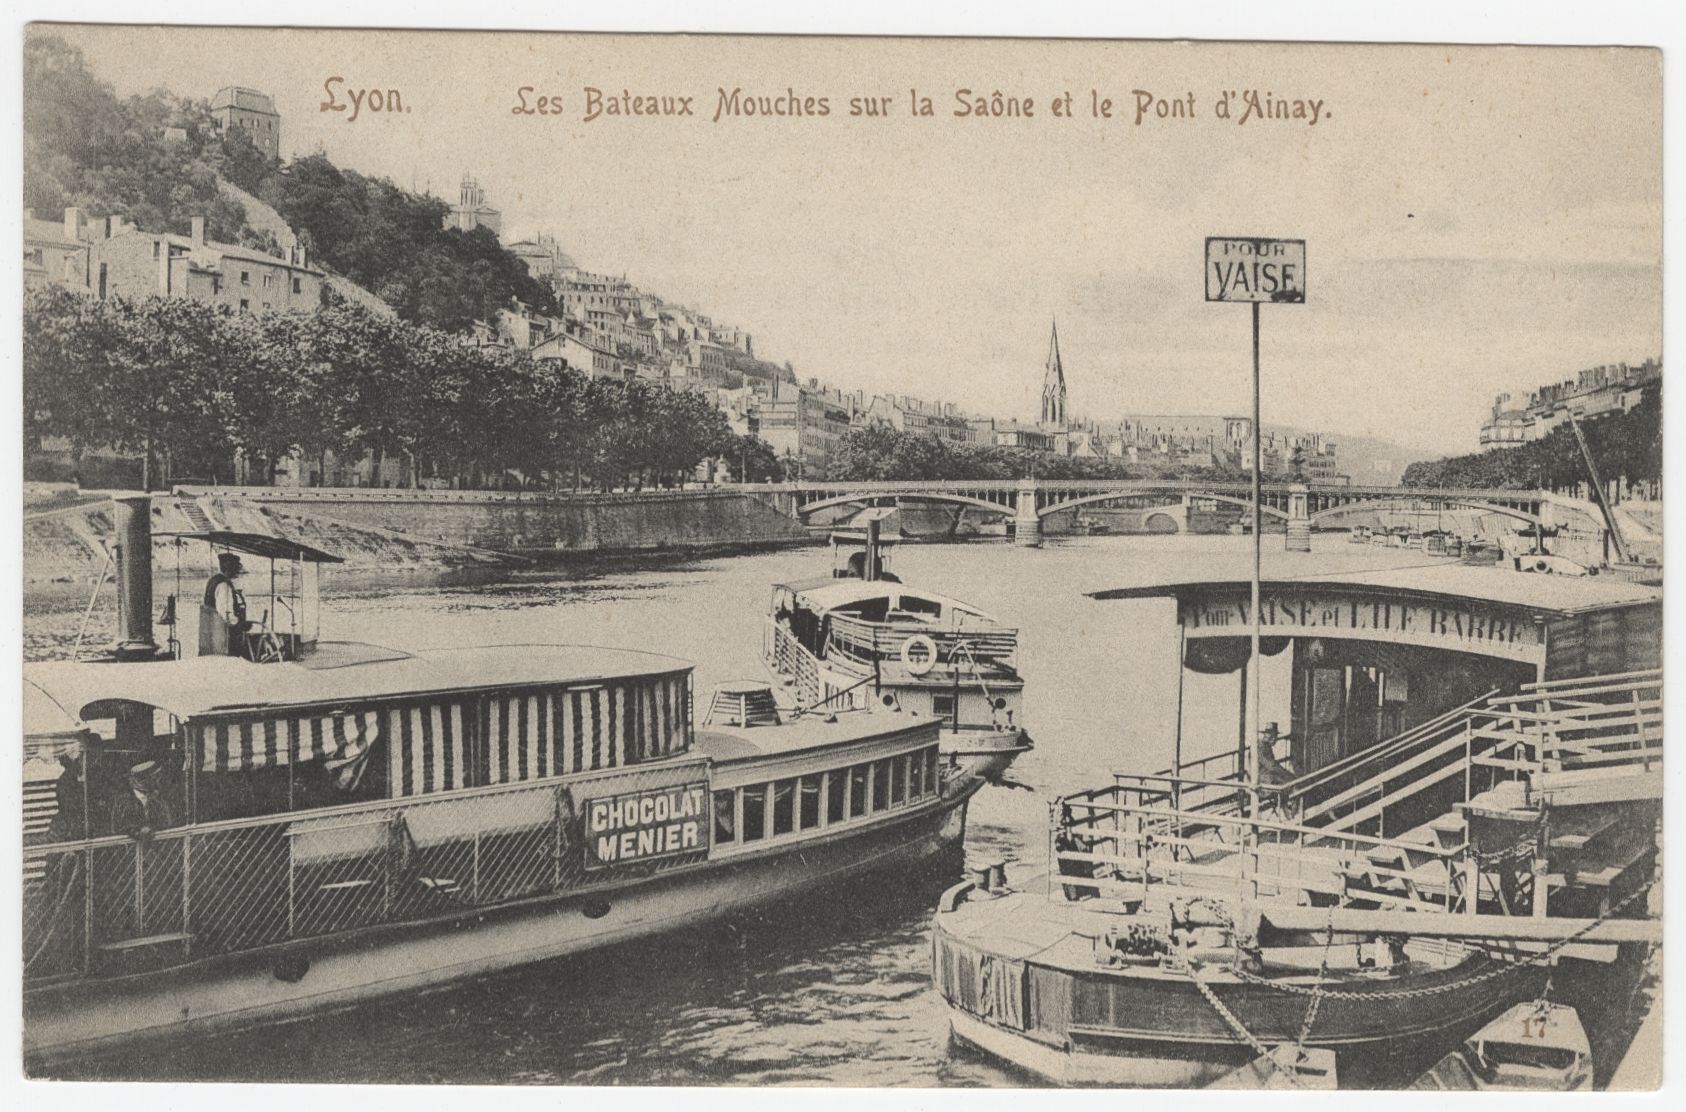 Les bateaux-mouches sur la Saône et le pont d'Ainay : carte postale (vers 1910, cote : 4FI/3342)